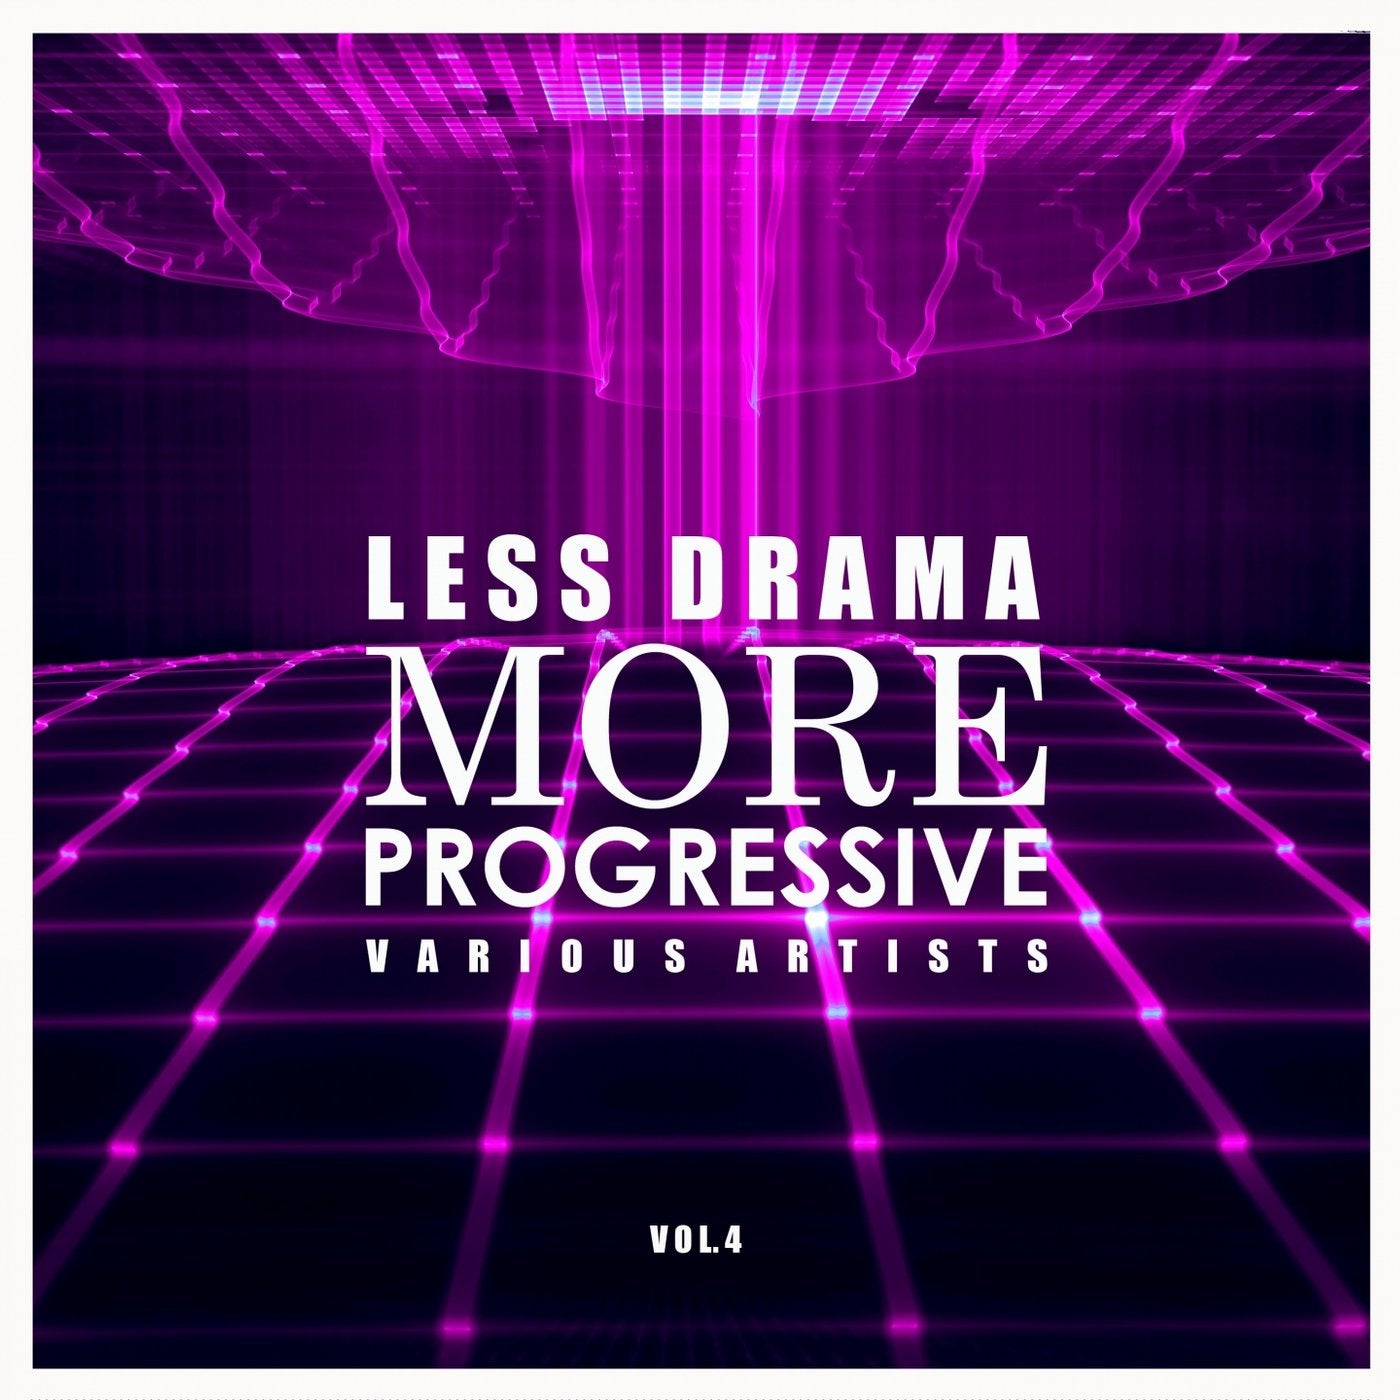 Less Drama More Progressive, Vol. 4